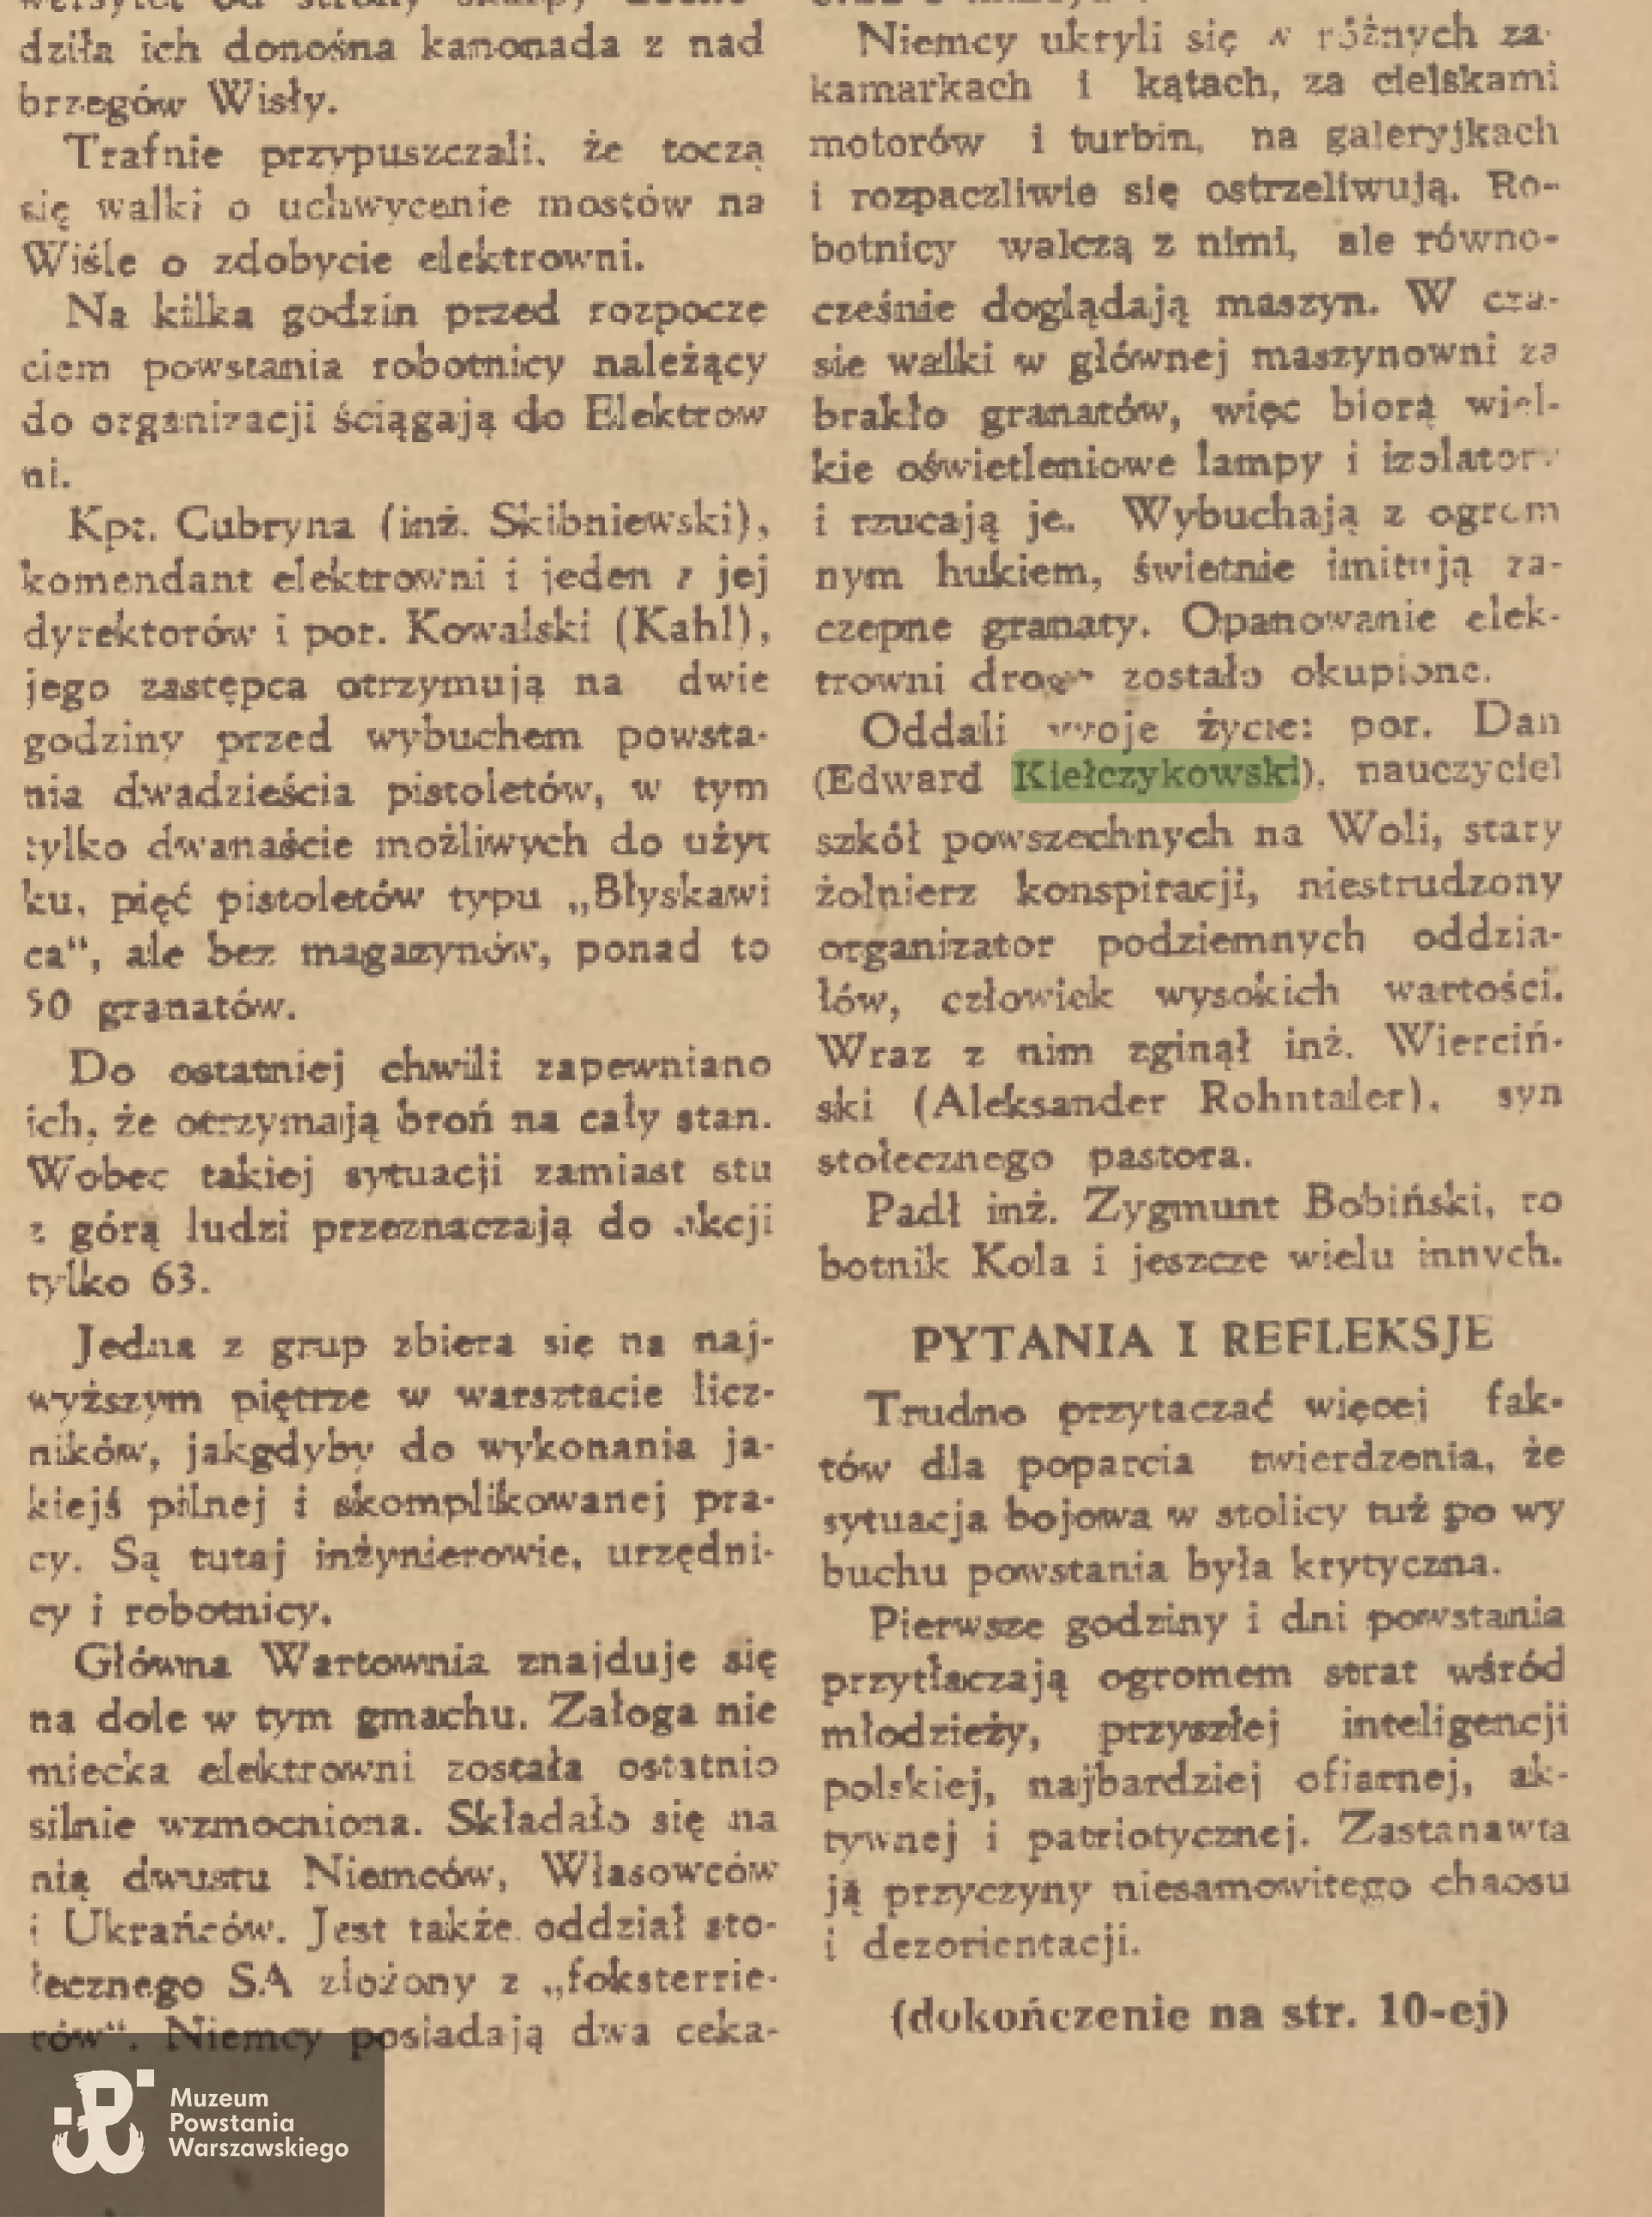 Fragment artykułu  Stanisława Podlewskiego "Dni chaosu i walki" opublikowanego w katolickim tygodniku społecznym "Dziś i jutro" nr 31(140) z 1.08.1948